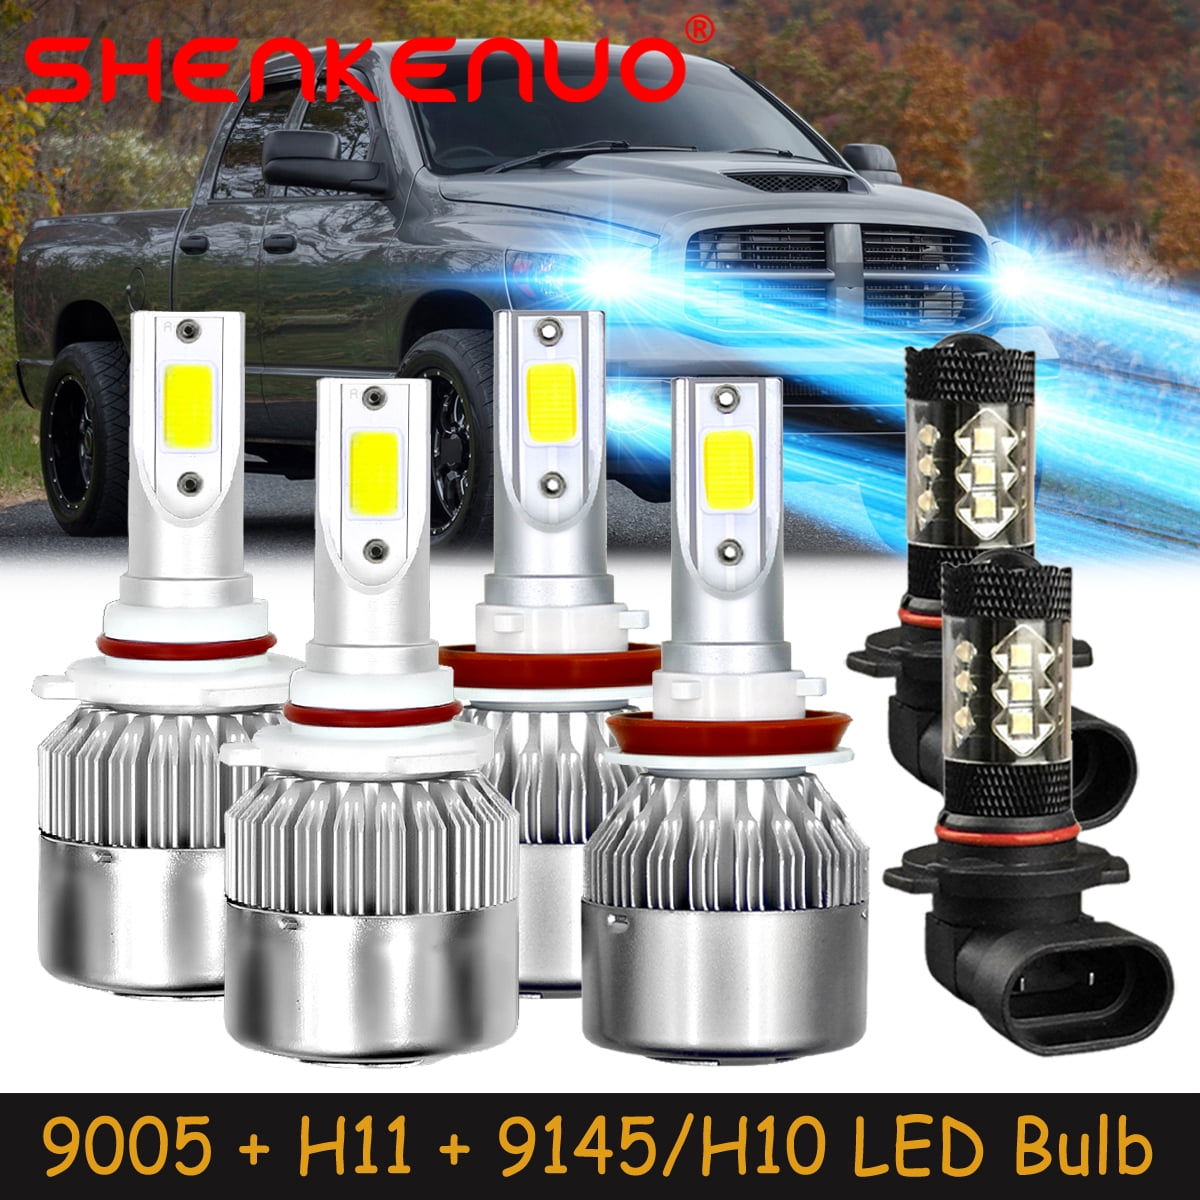 SHENKENUO for 2009-2019 Dodge Ram 1500 2500 3500 4500 - LED Headlight Bulbs  High Low Beam + Fog Light,9005+H11+9145/H10,8000K Ice Blue,Pack of 6,C02 